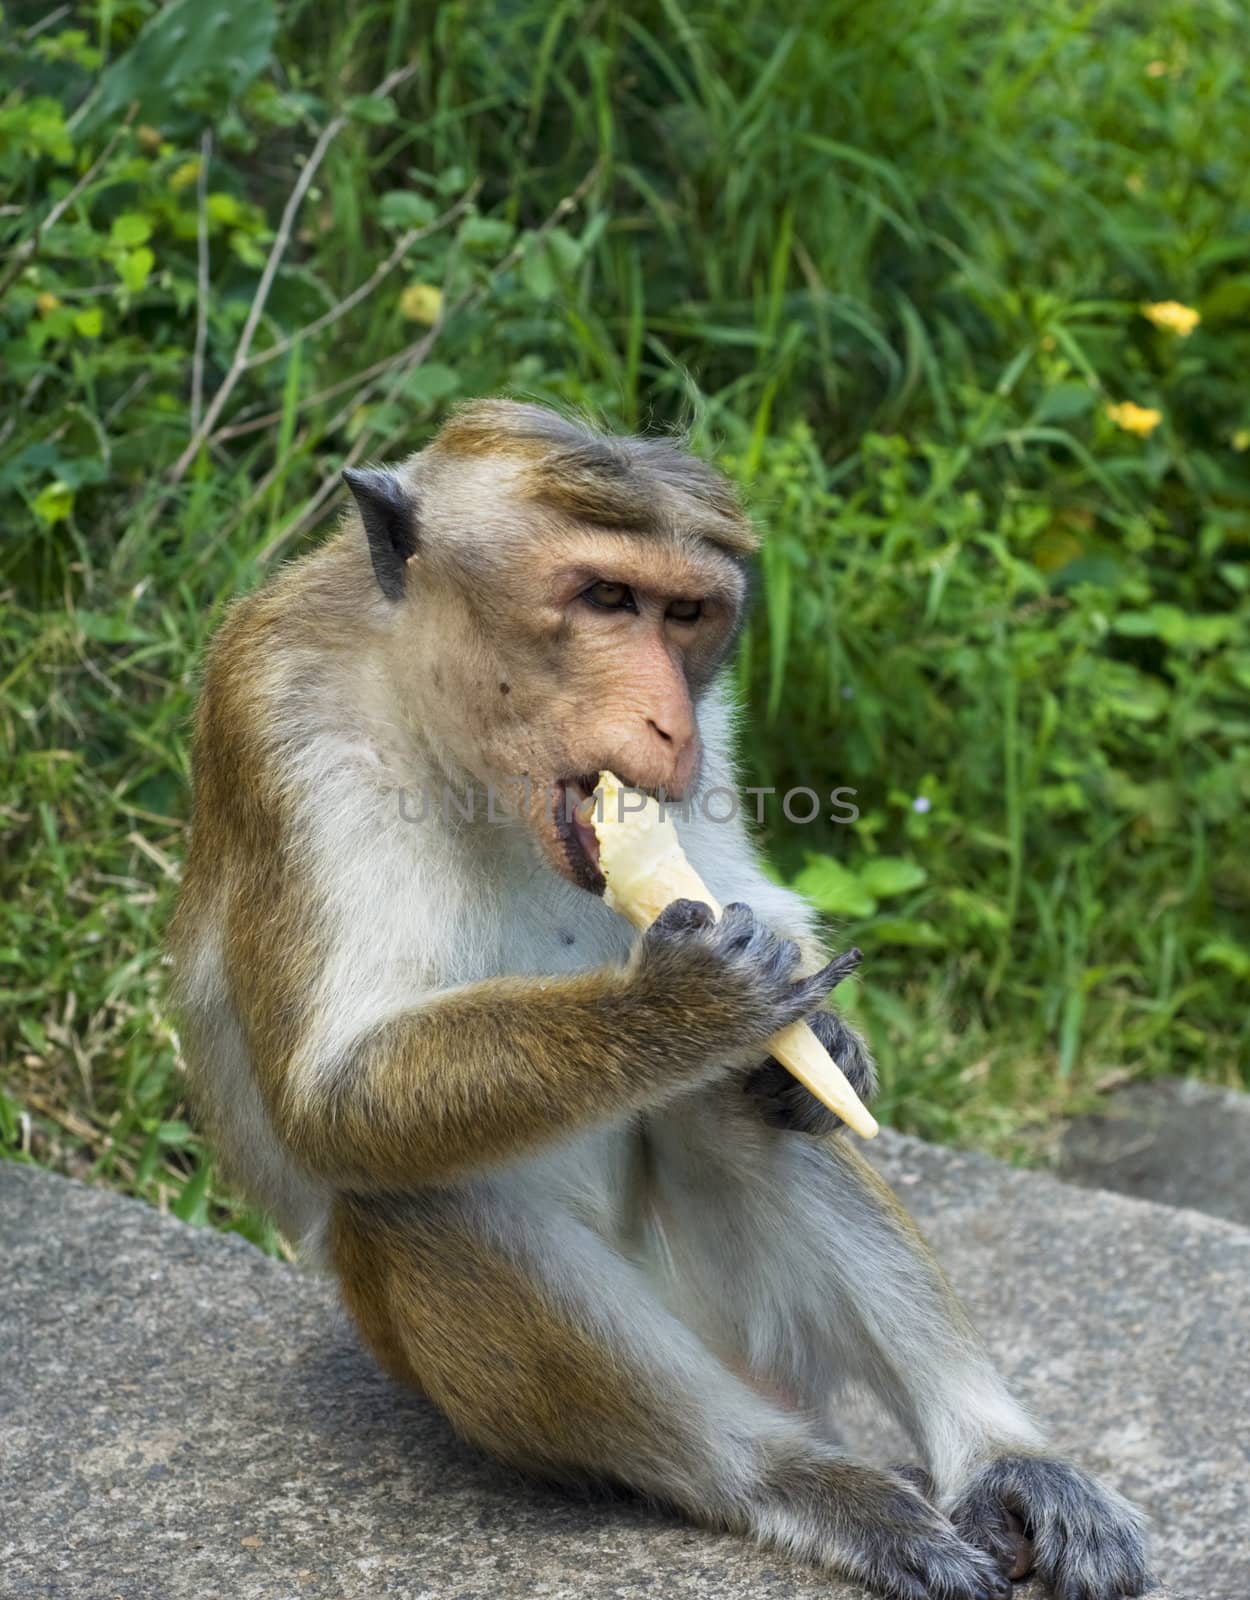 Monkey eating ice-ream